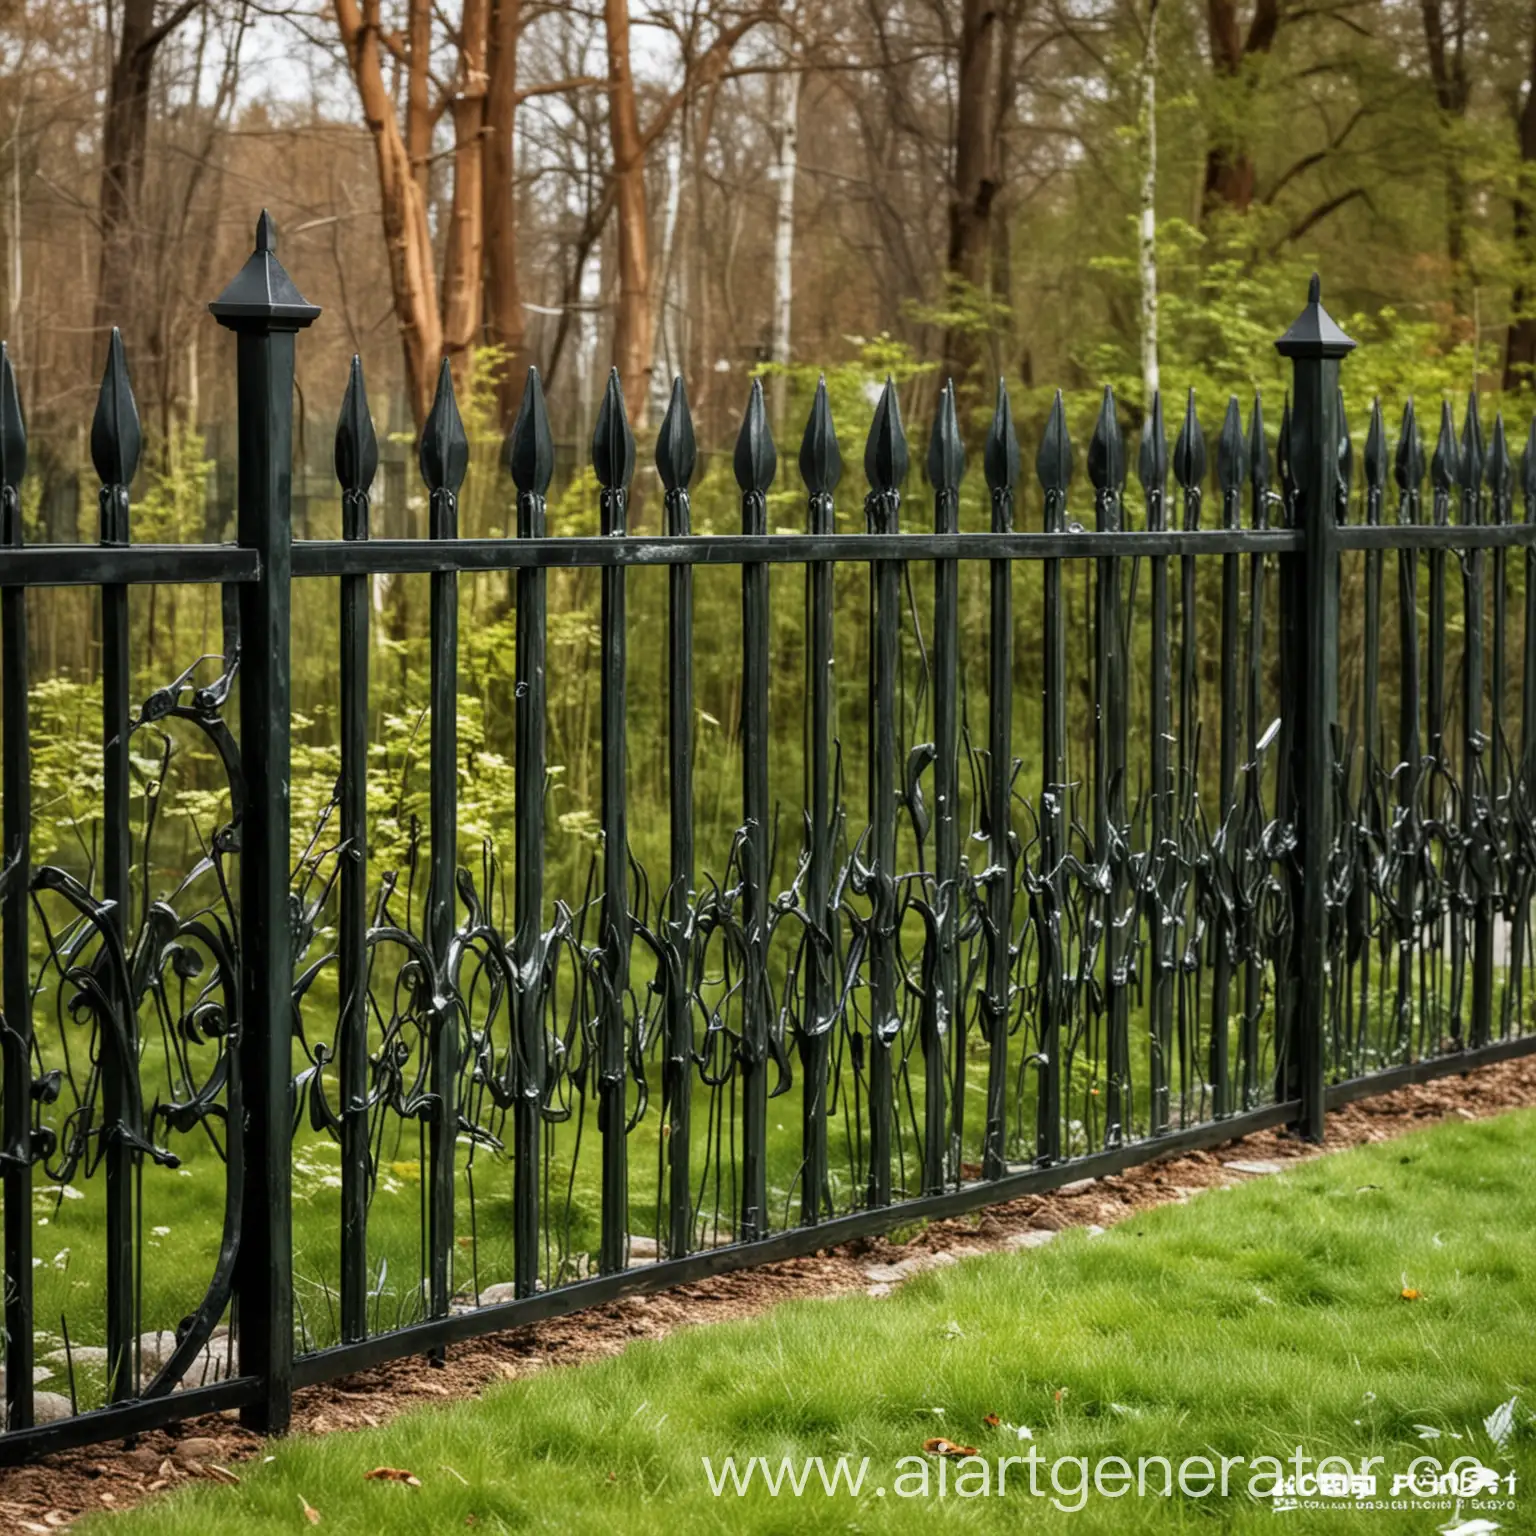 Fashionable-Metal-Designer-Fence-for-Parks-Elegant-Park-Enclosure